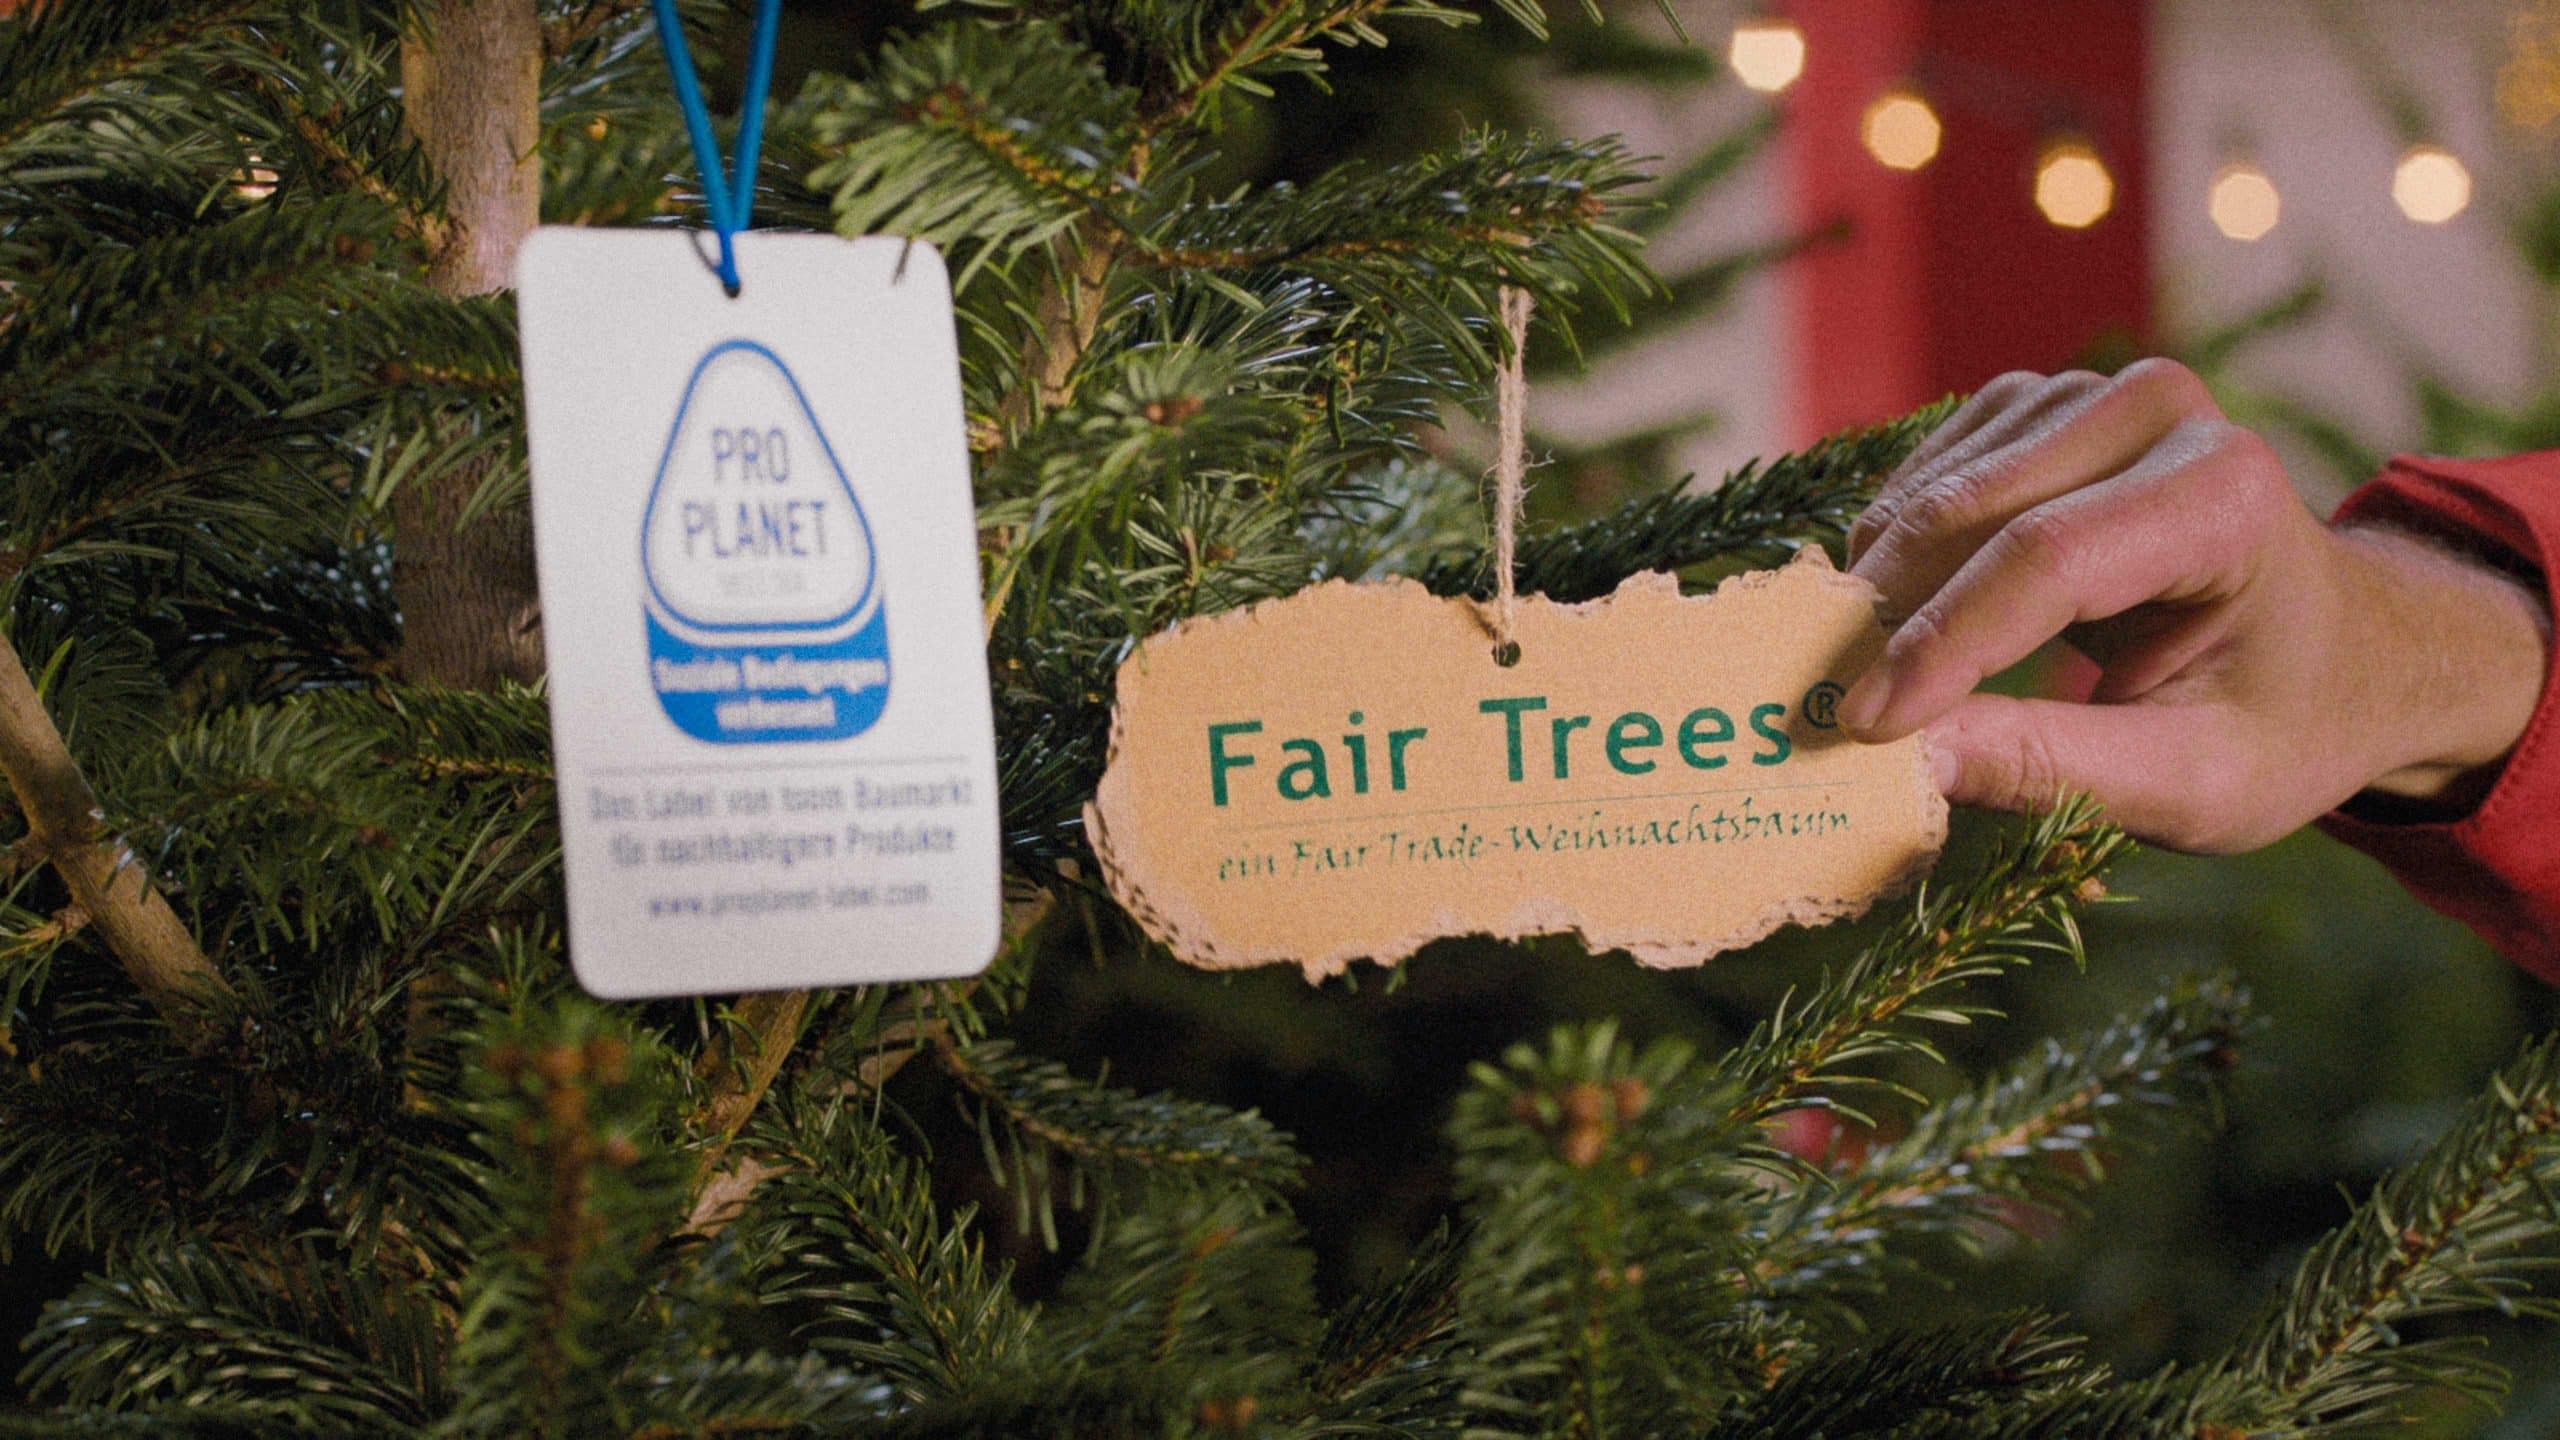 Zwei Schilder von Pro Planet und Fair Trees hängen an einem Weihnachtsbaum